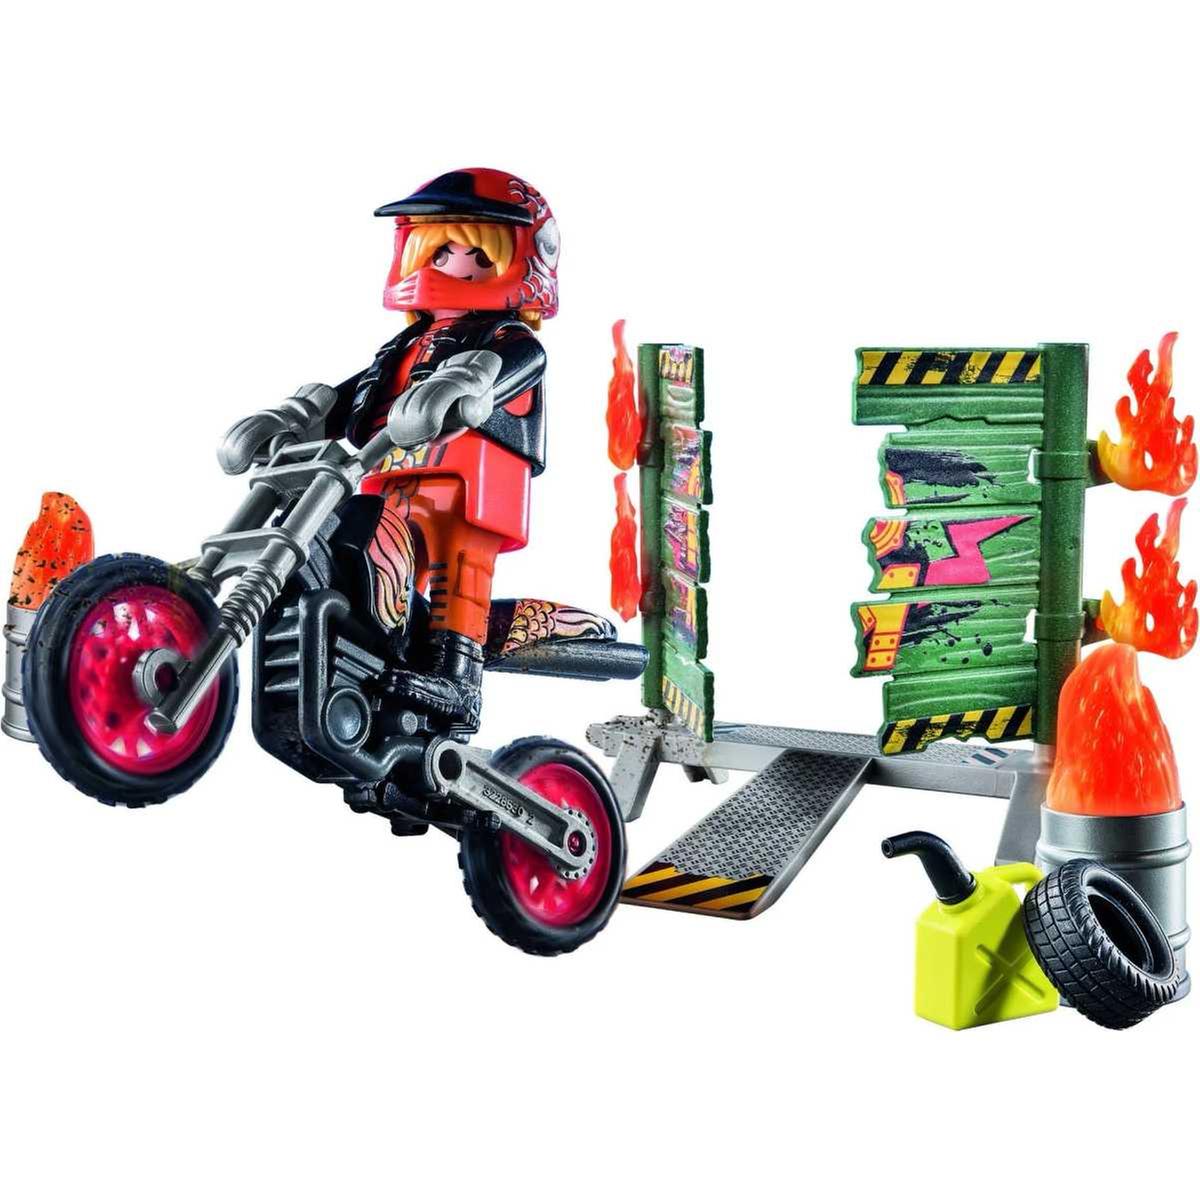 Playmobil - Pack inicial Playmobil Stunt Show: Moto e parede de fogo ㅤ |  DIVERSOS | Loja de brinquedos e videojogos Online Toysrus